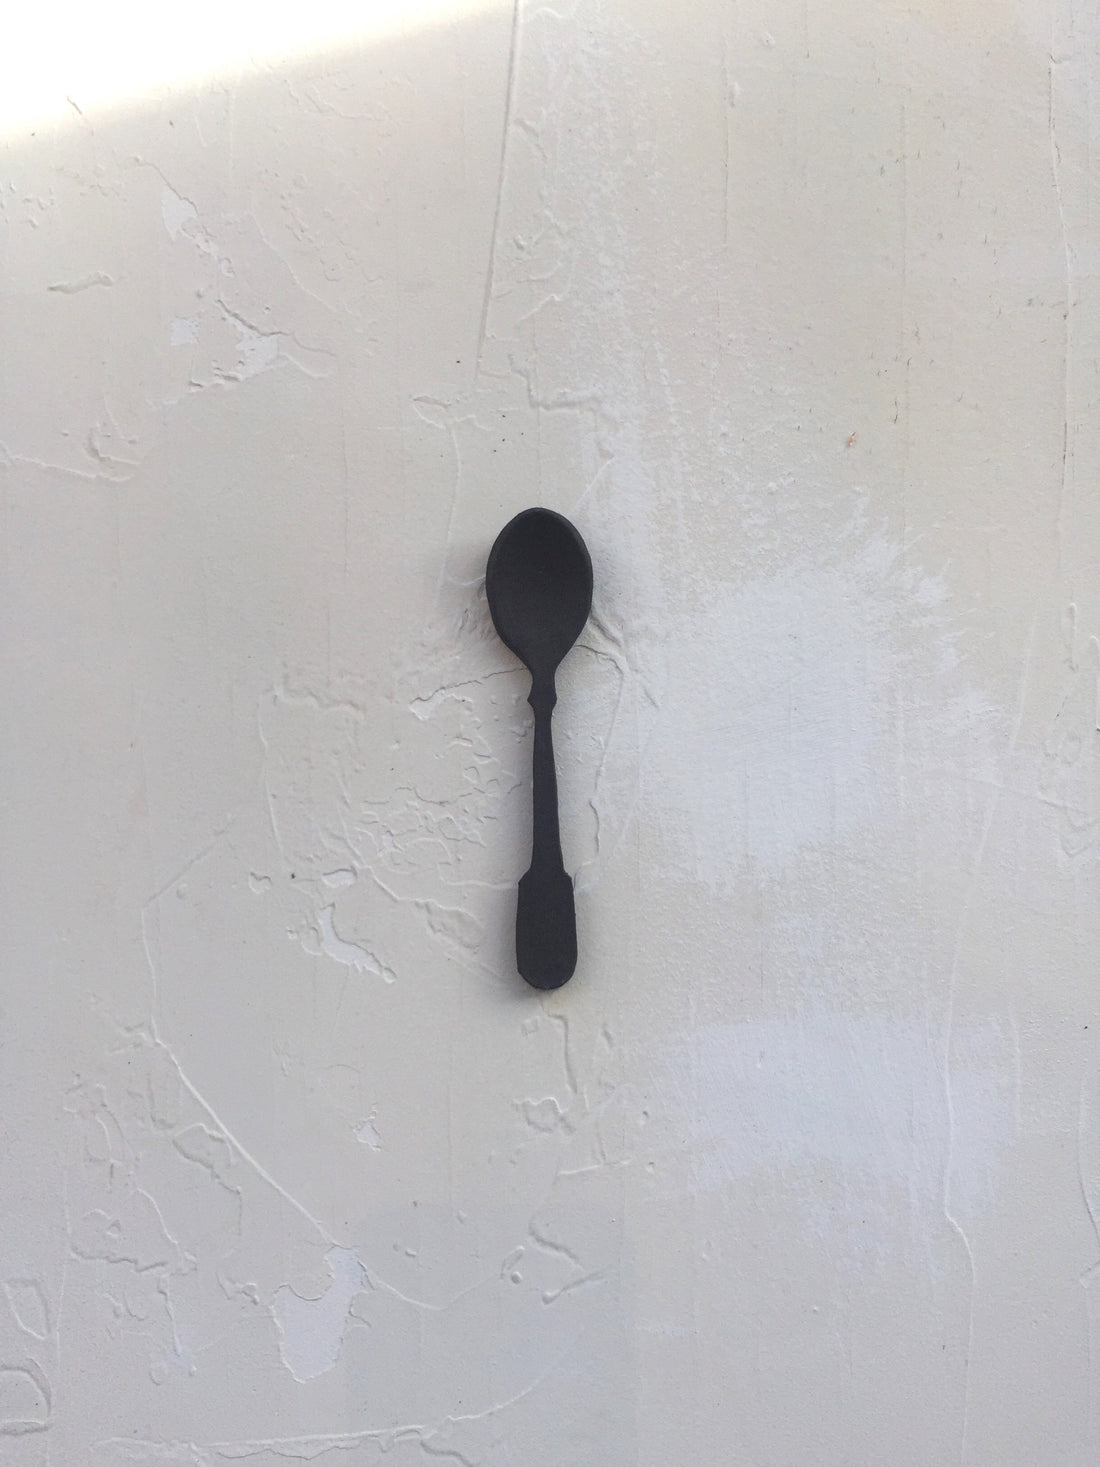 Demitasse spoon